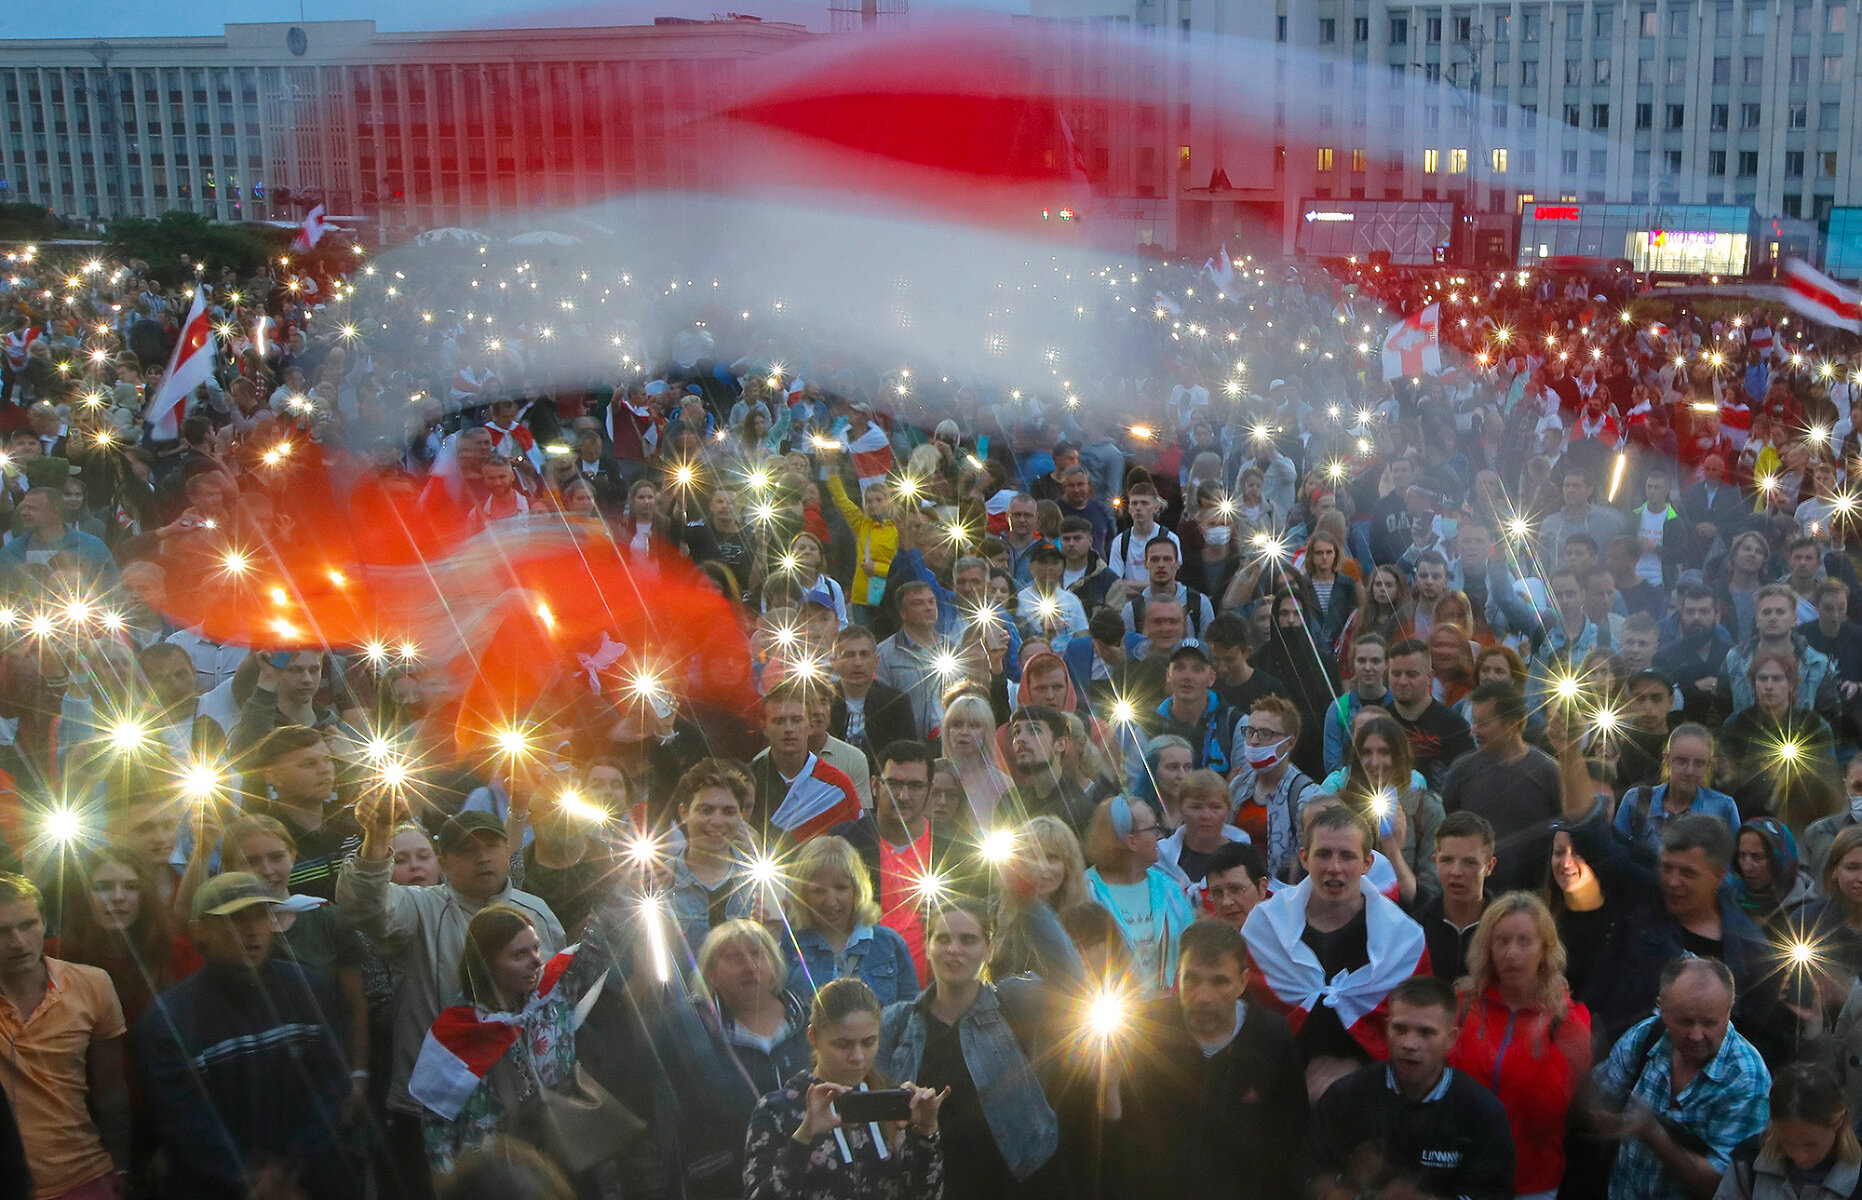 <p>Участники протестов на площади Независимости в Минске, 19 августа 2020 года.&nbsp;<br />
<br />
Массовые акции протеста в Беларуси продолжались до зимы. Их участники вели себя мирно, но часто их разгоняли силовики. За это время десятки тысяч людей были задержаны, тысячи были осуждены или были вынуждены уехать.&nbsp;</p>